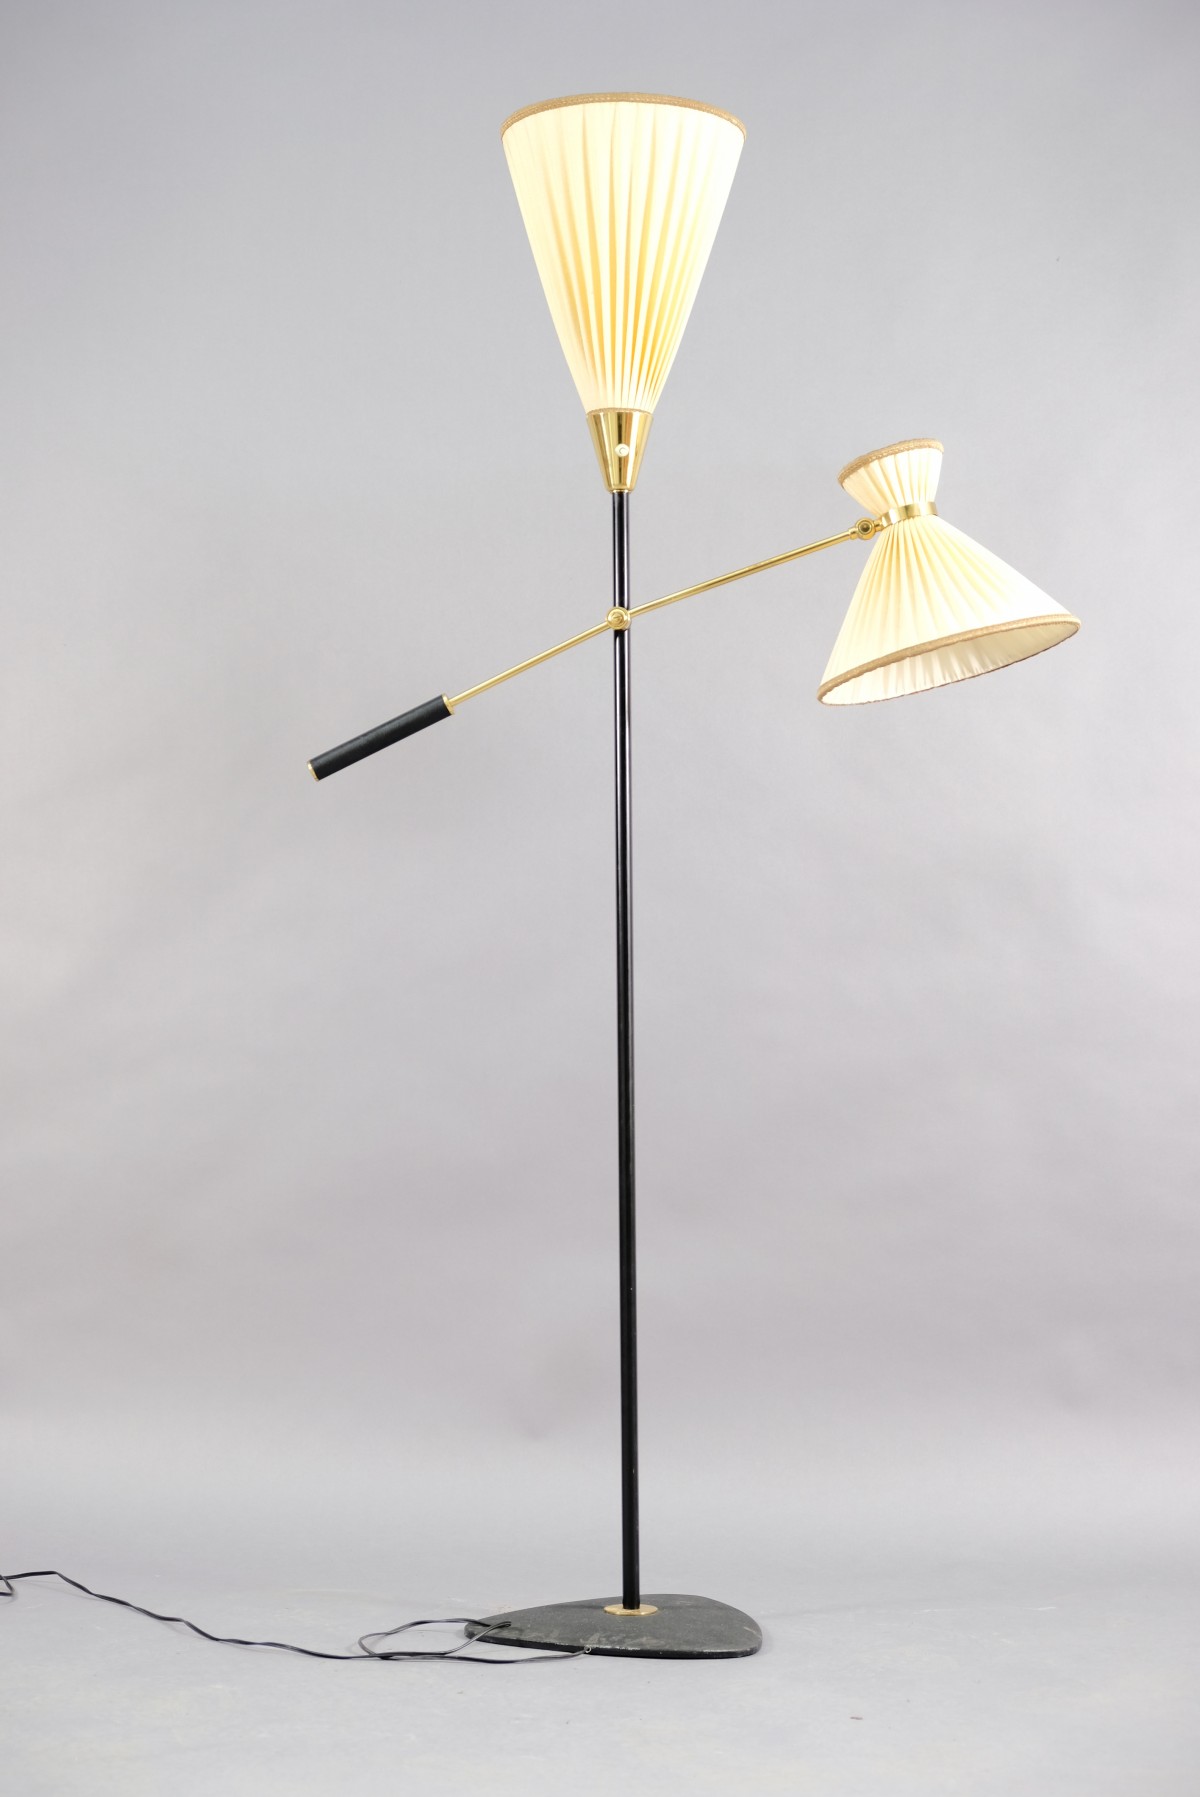 Vintage Stehlampe aus Messing mit wei em Lampenschirm 1950er bei Lieber M bel kaufen